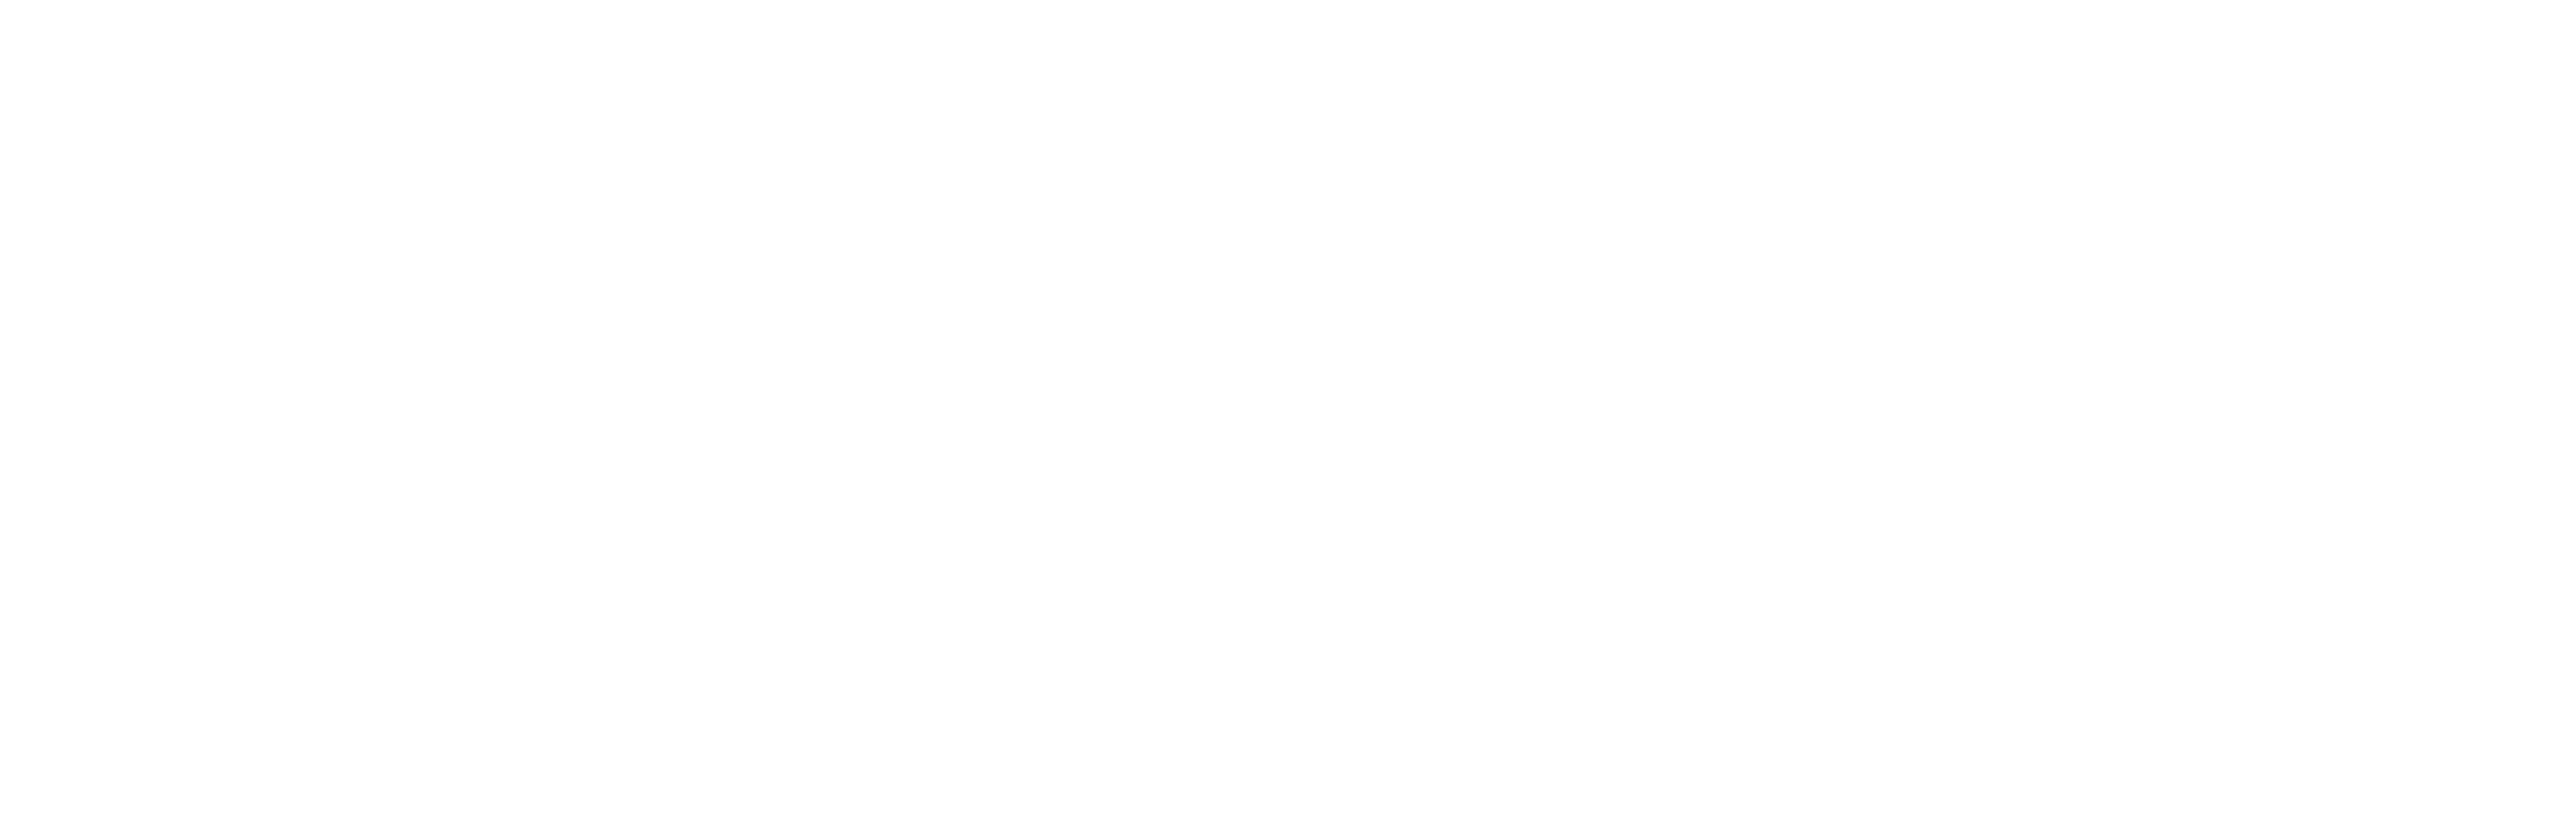 iTechOps